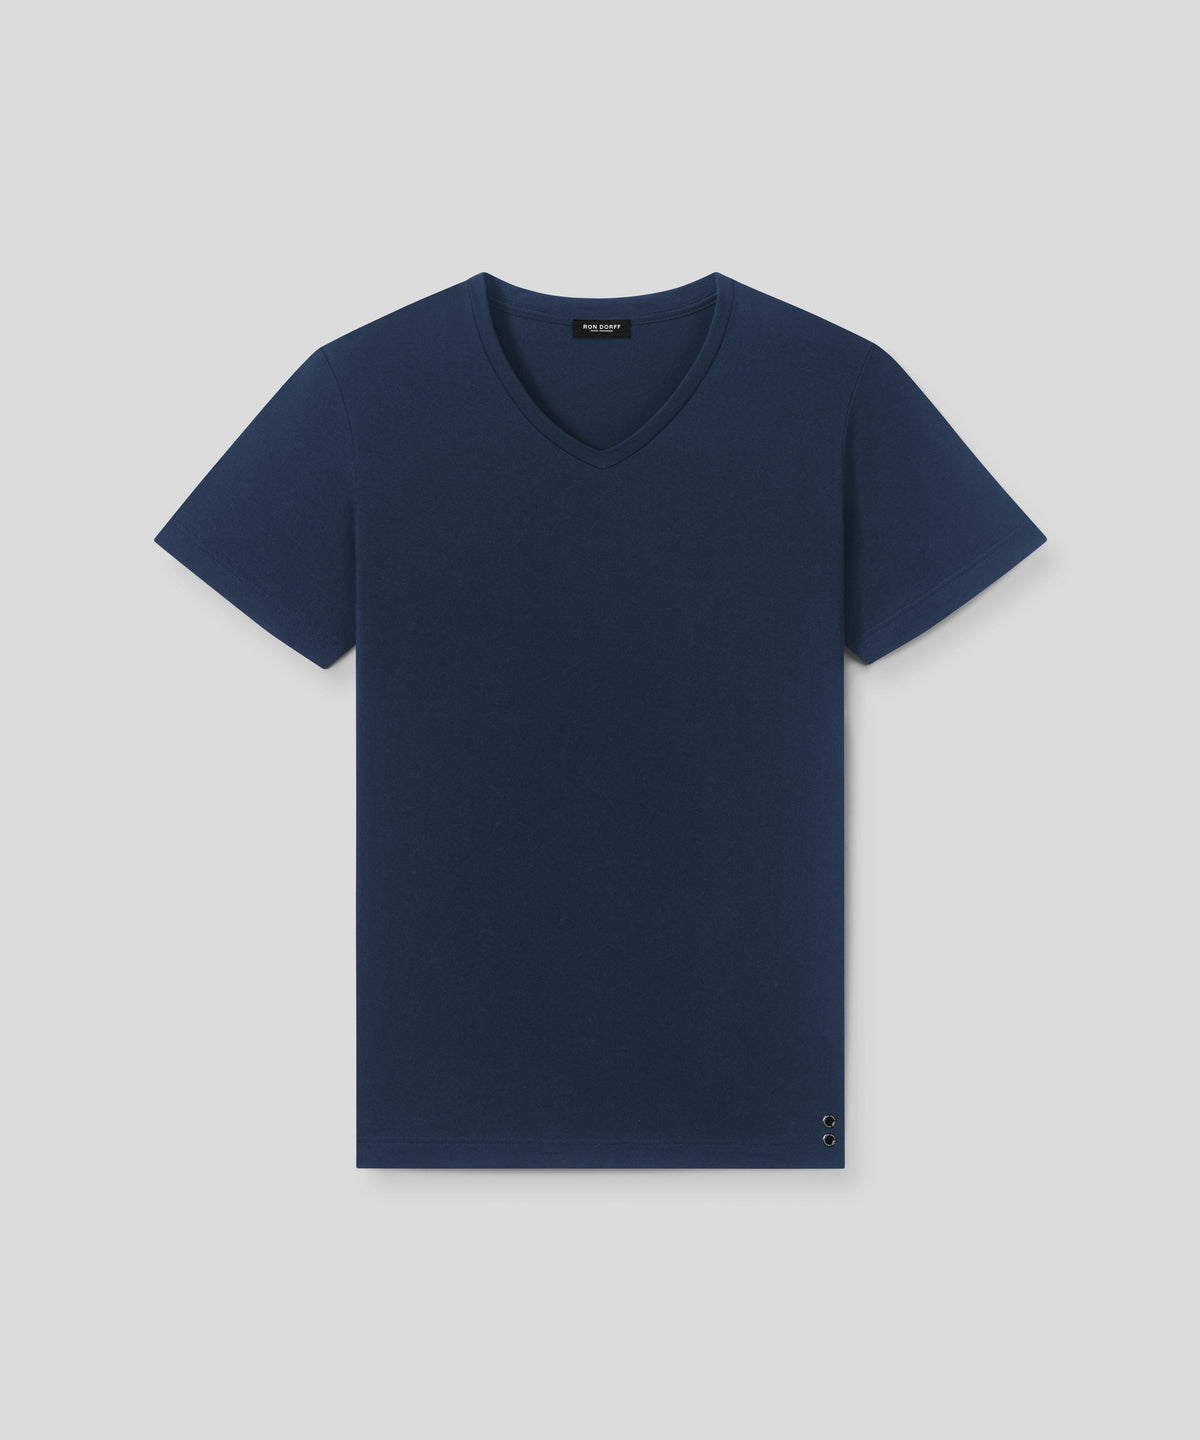 T-Shirt Eyelet Edition V Neck: Navy